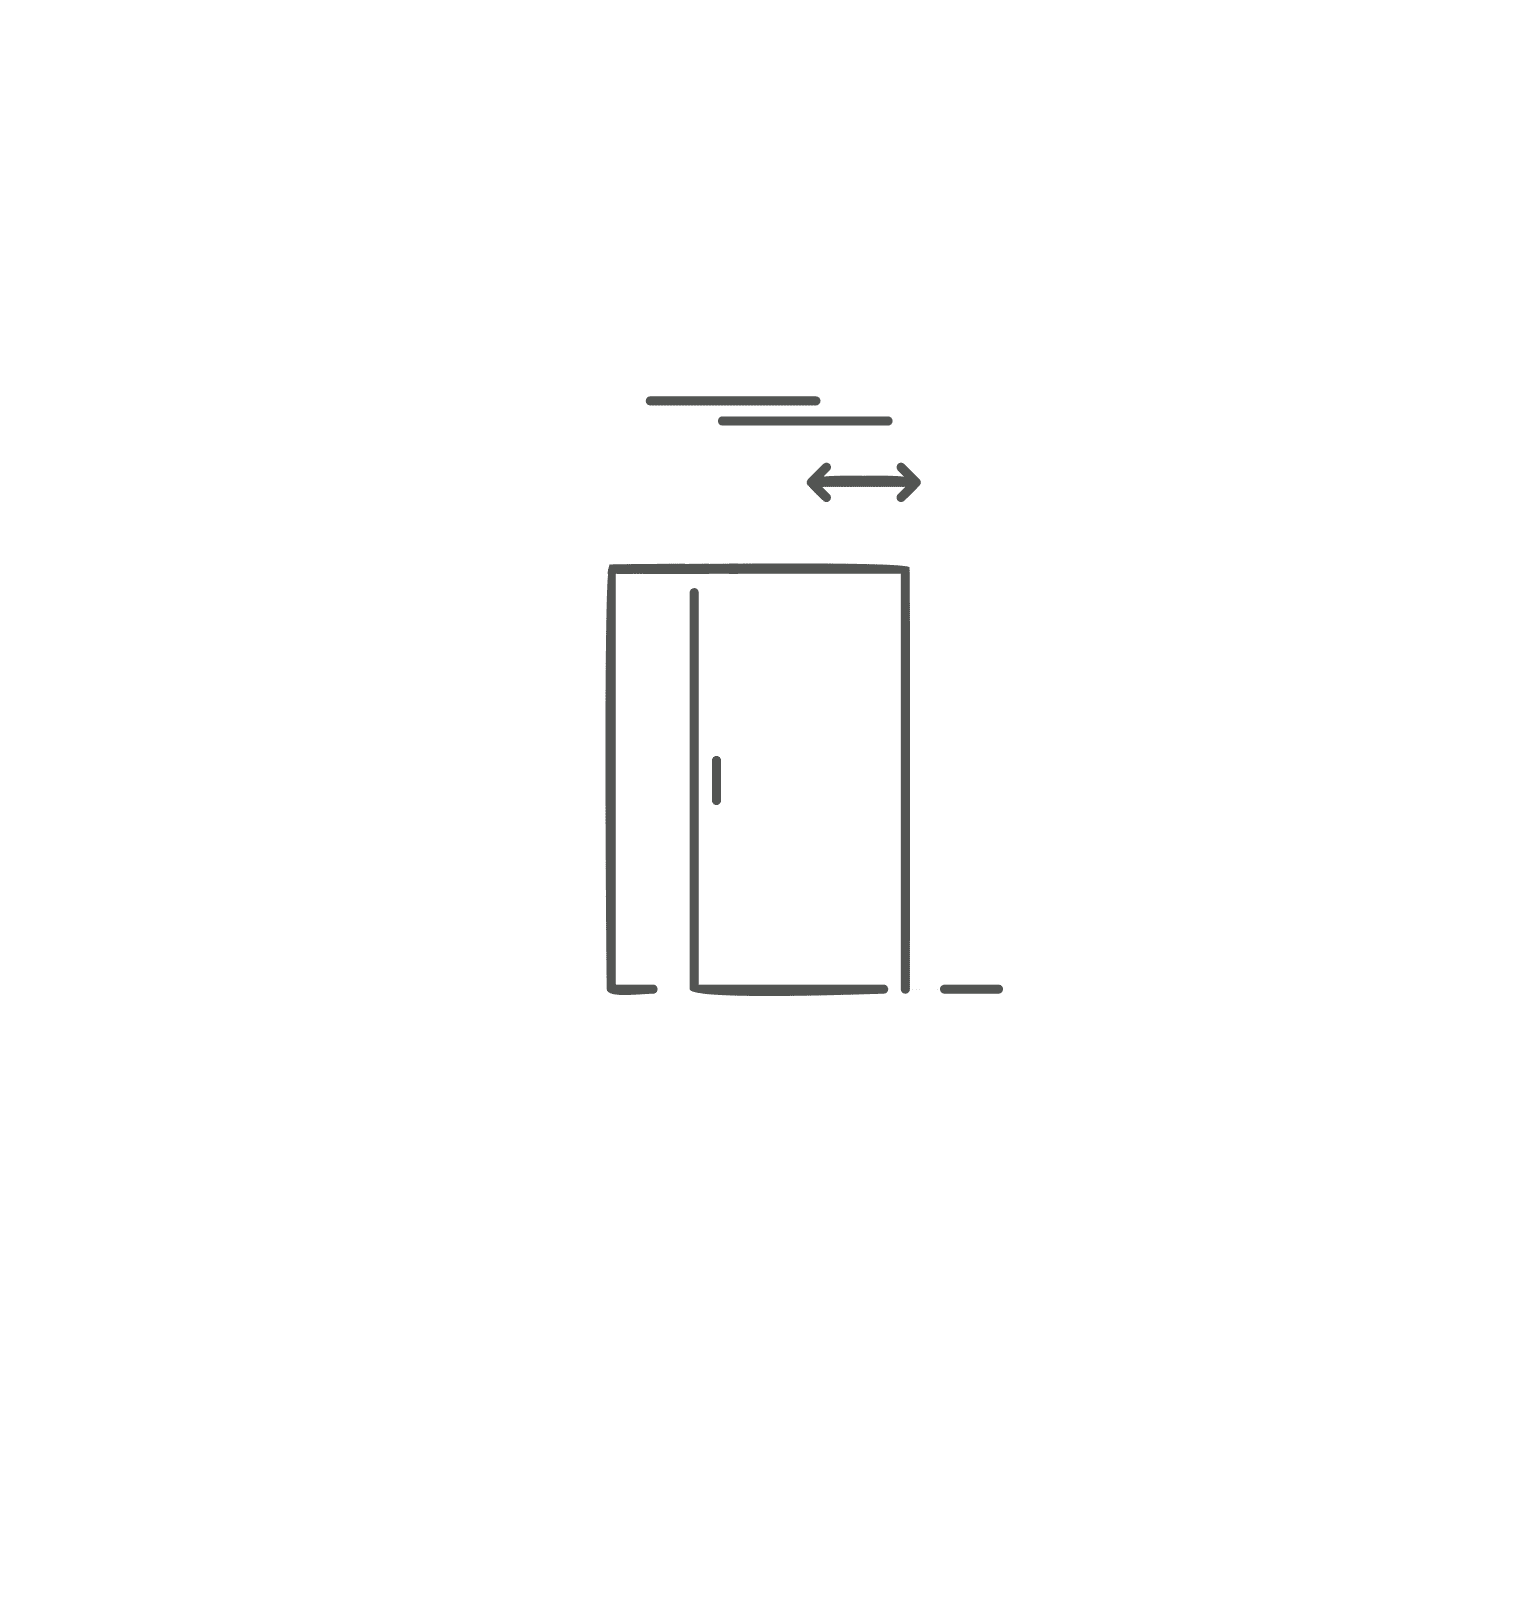 All Door and Hardware - Gliding - Exterior - Single Door - Woodgrain